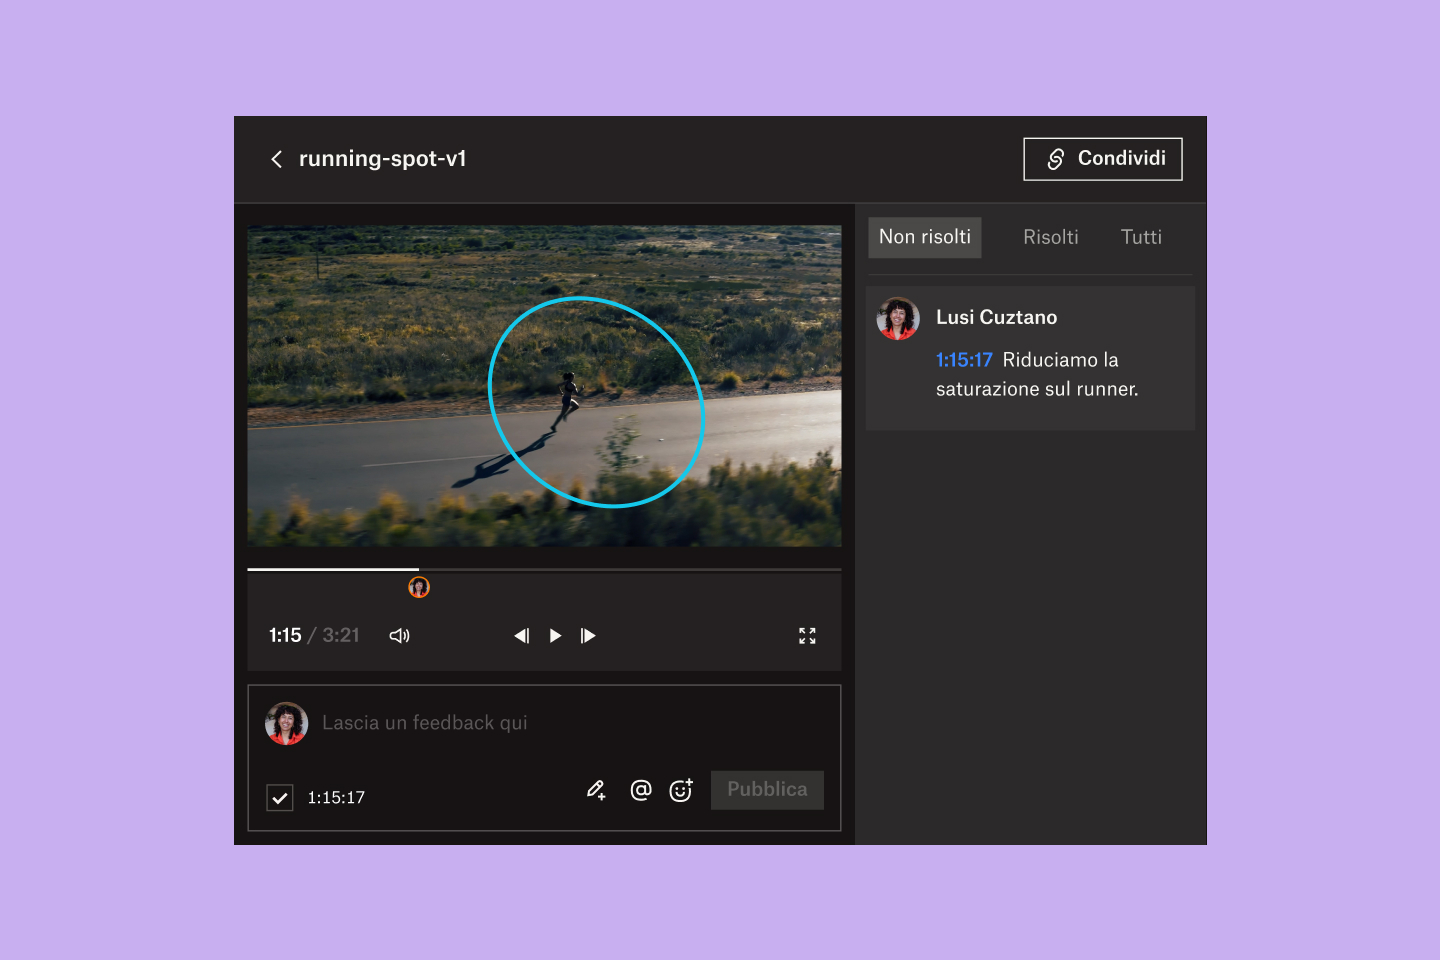 Interfaccia utente di Dropbox Replay che mostra il processo di revisione e approvazione di file video